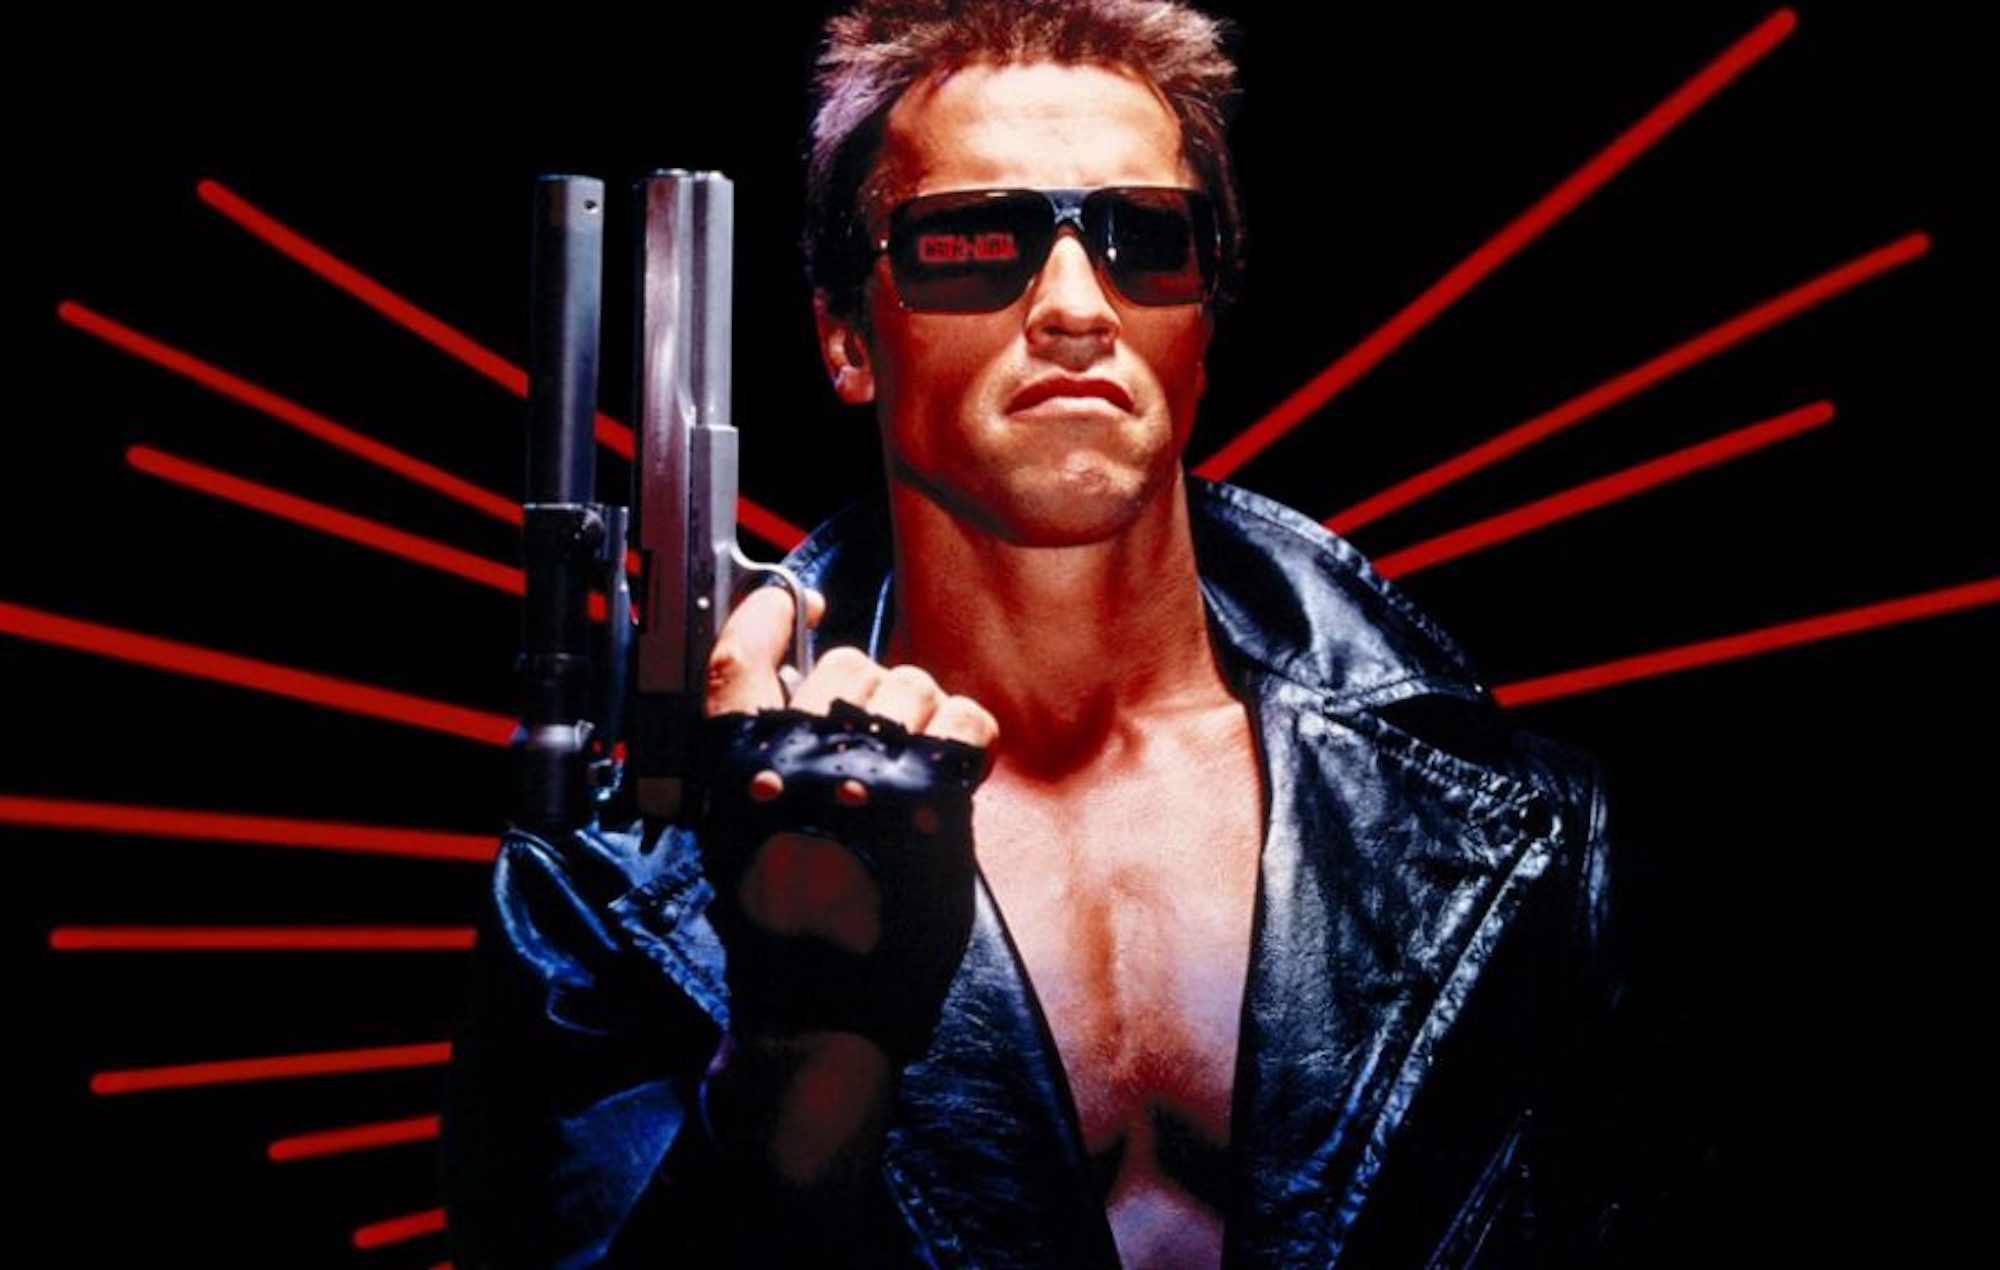 La primera copia de la cinta VHS de "Terminator" se ha vendido por 32.500 dólares